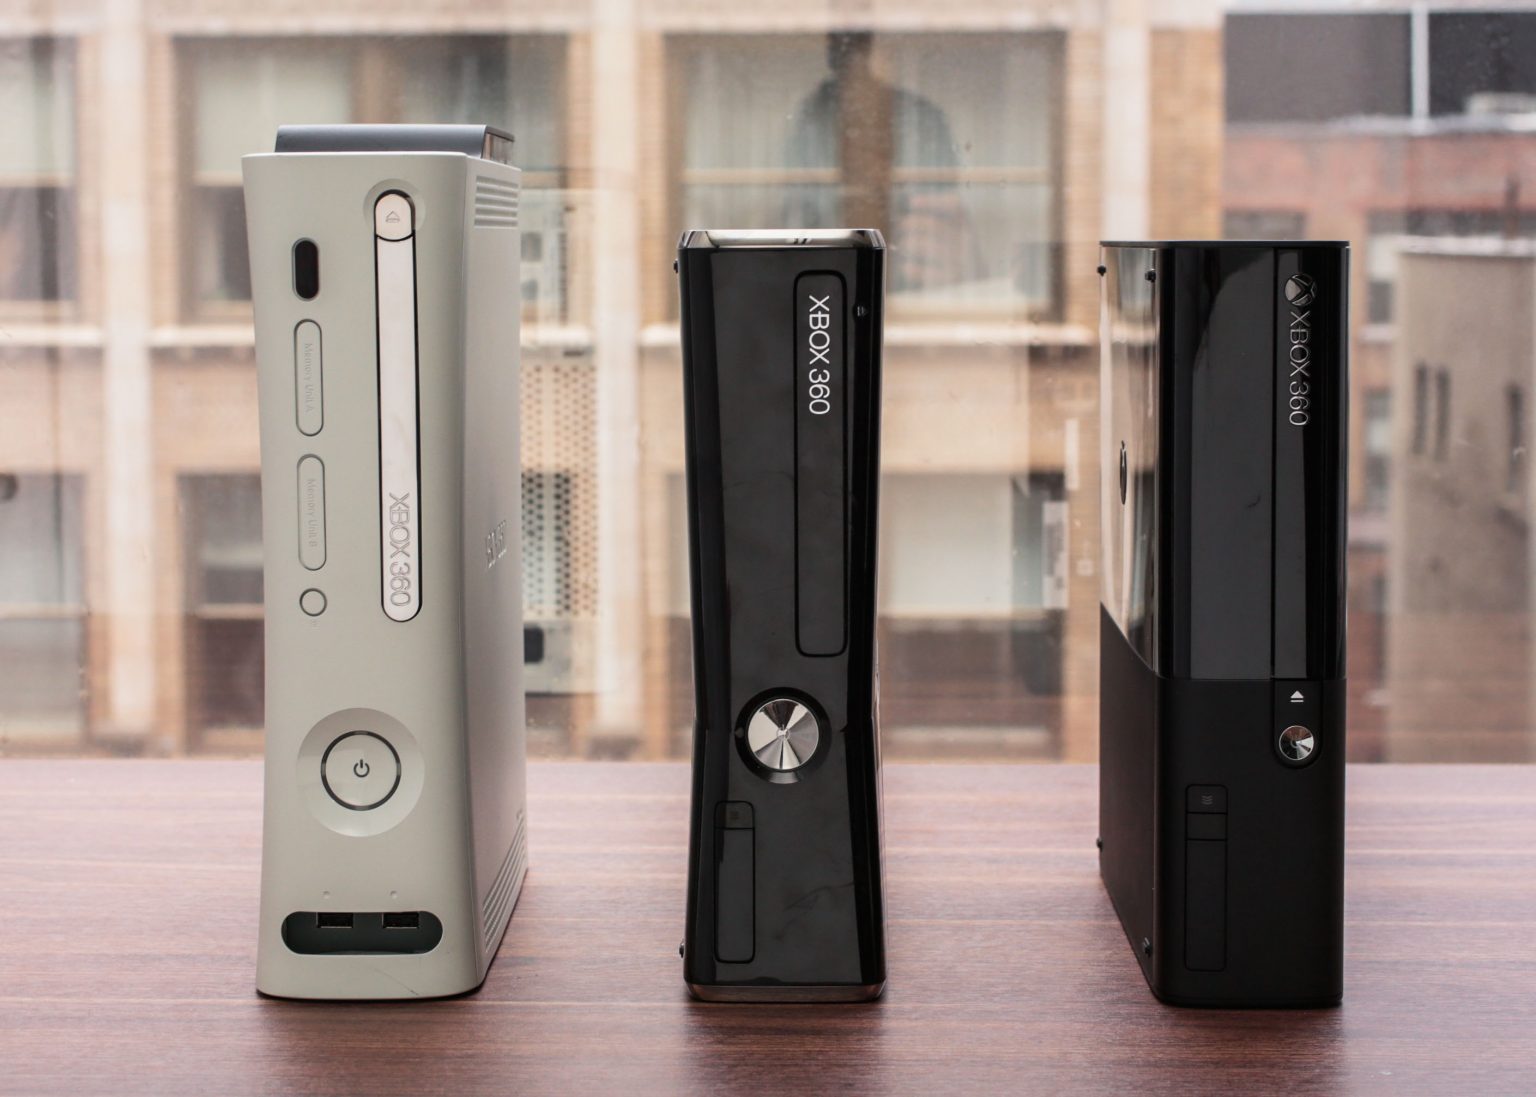 קנה Xbox 360 בלוח המודעות: אוסף של משחקים קלאסיים